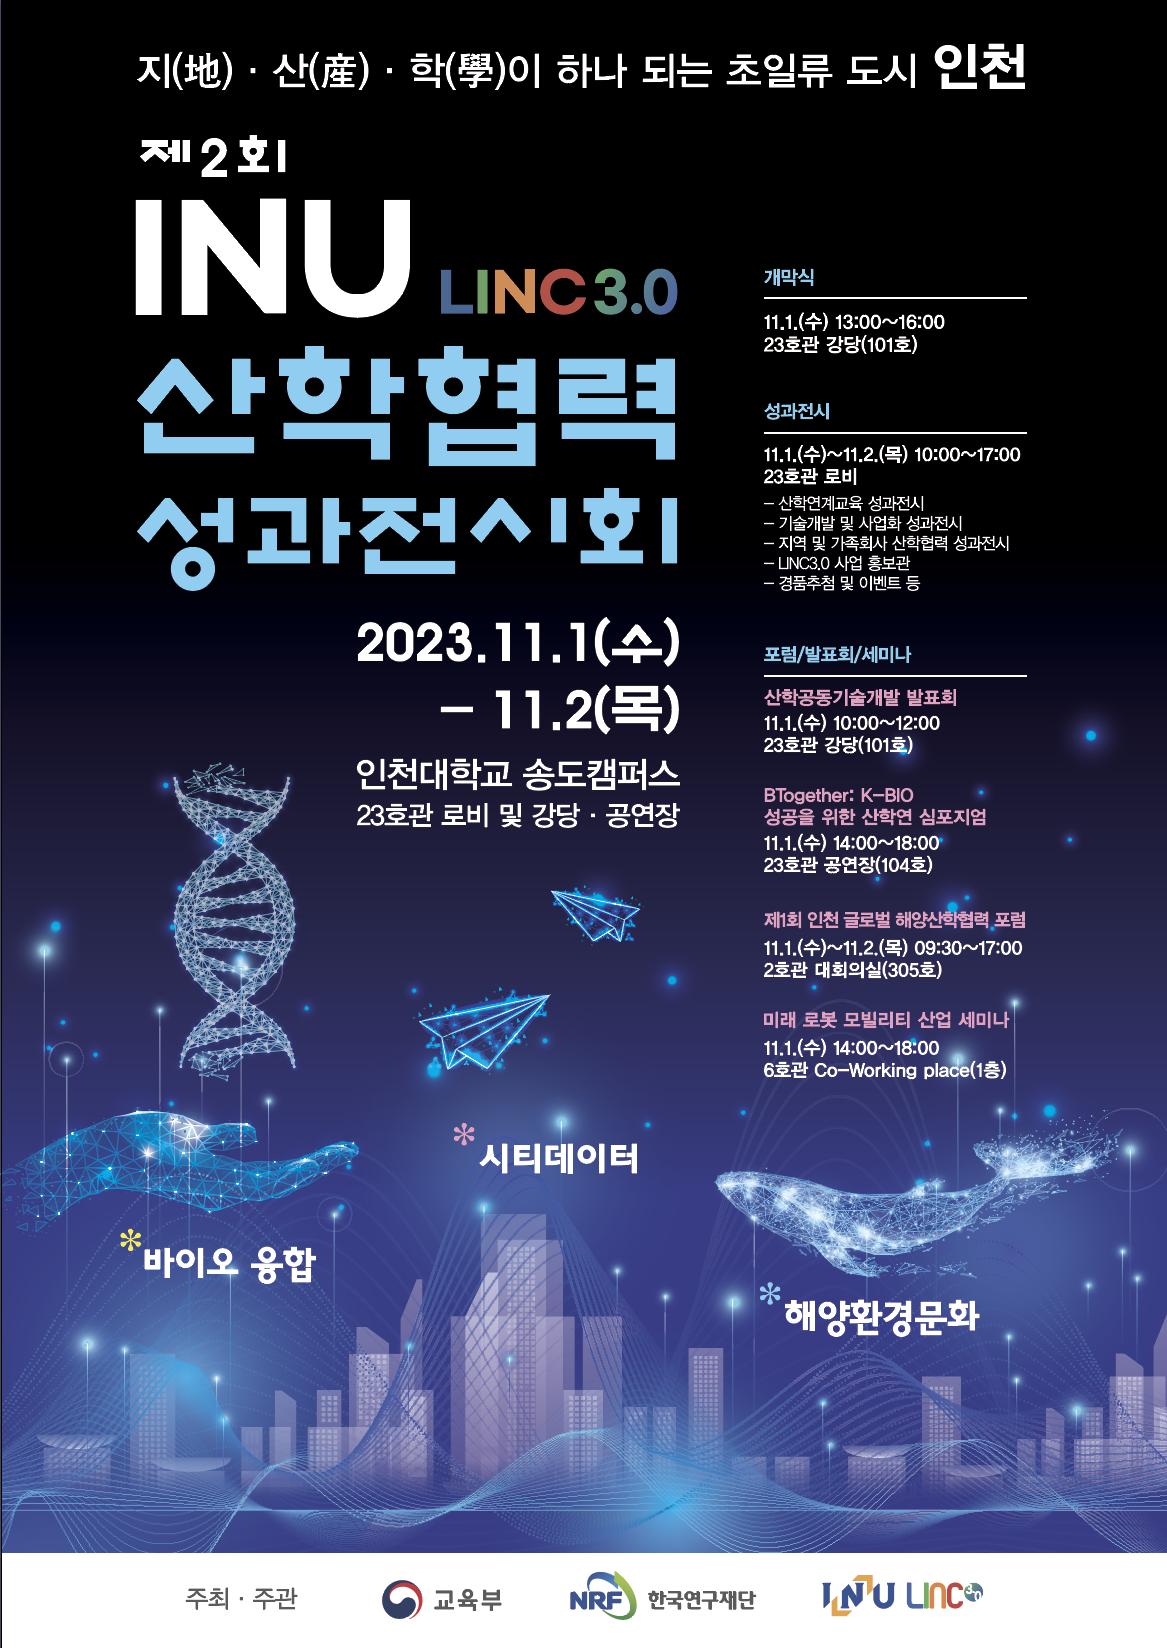 인천대학교 2023년도 산학협력 성과전시회 개최 안내 및 참여 요청 썸네일